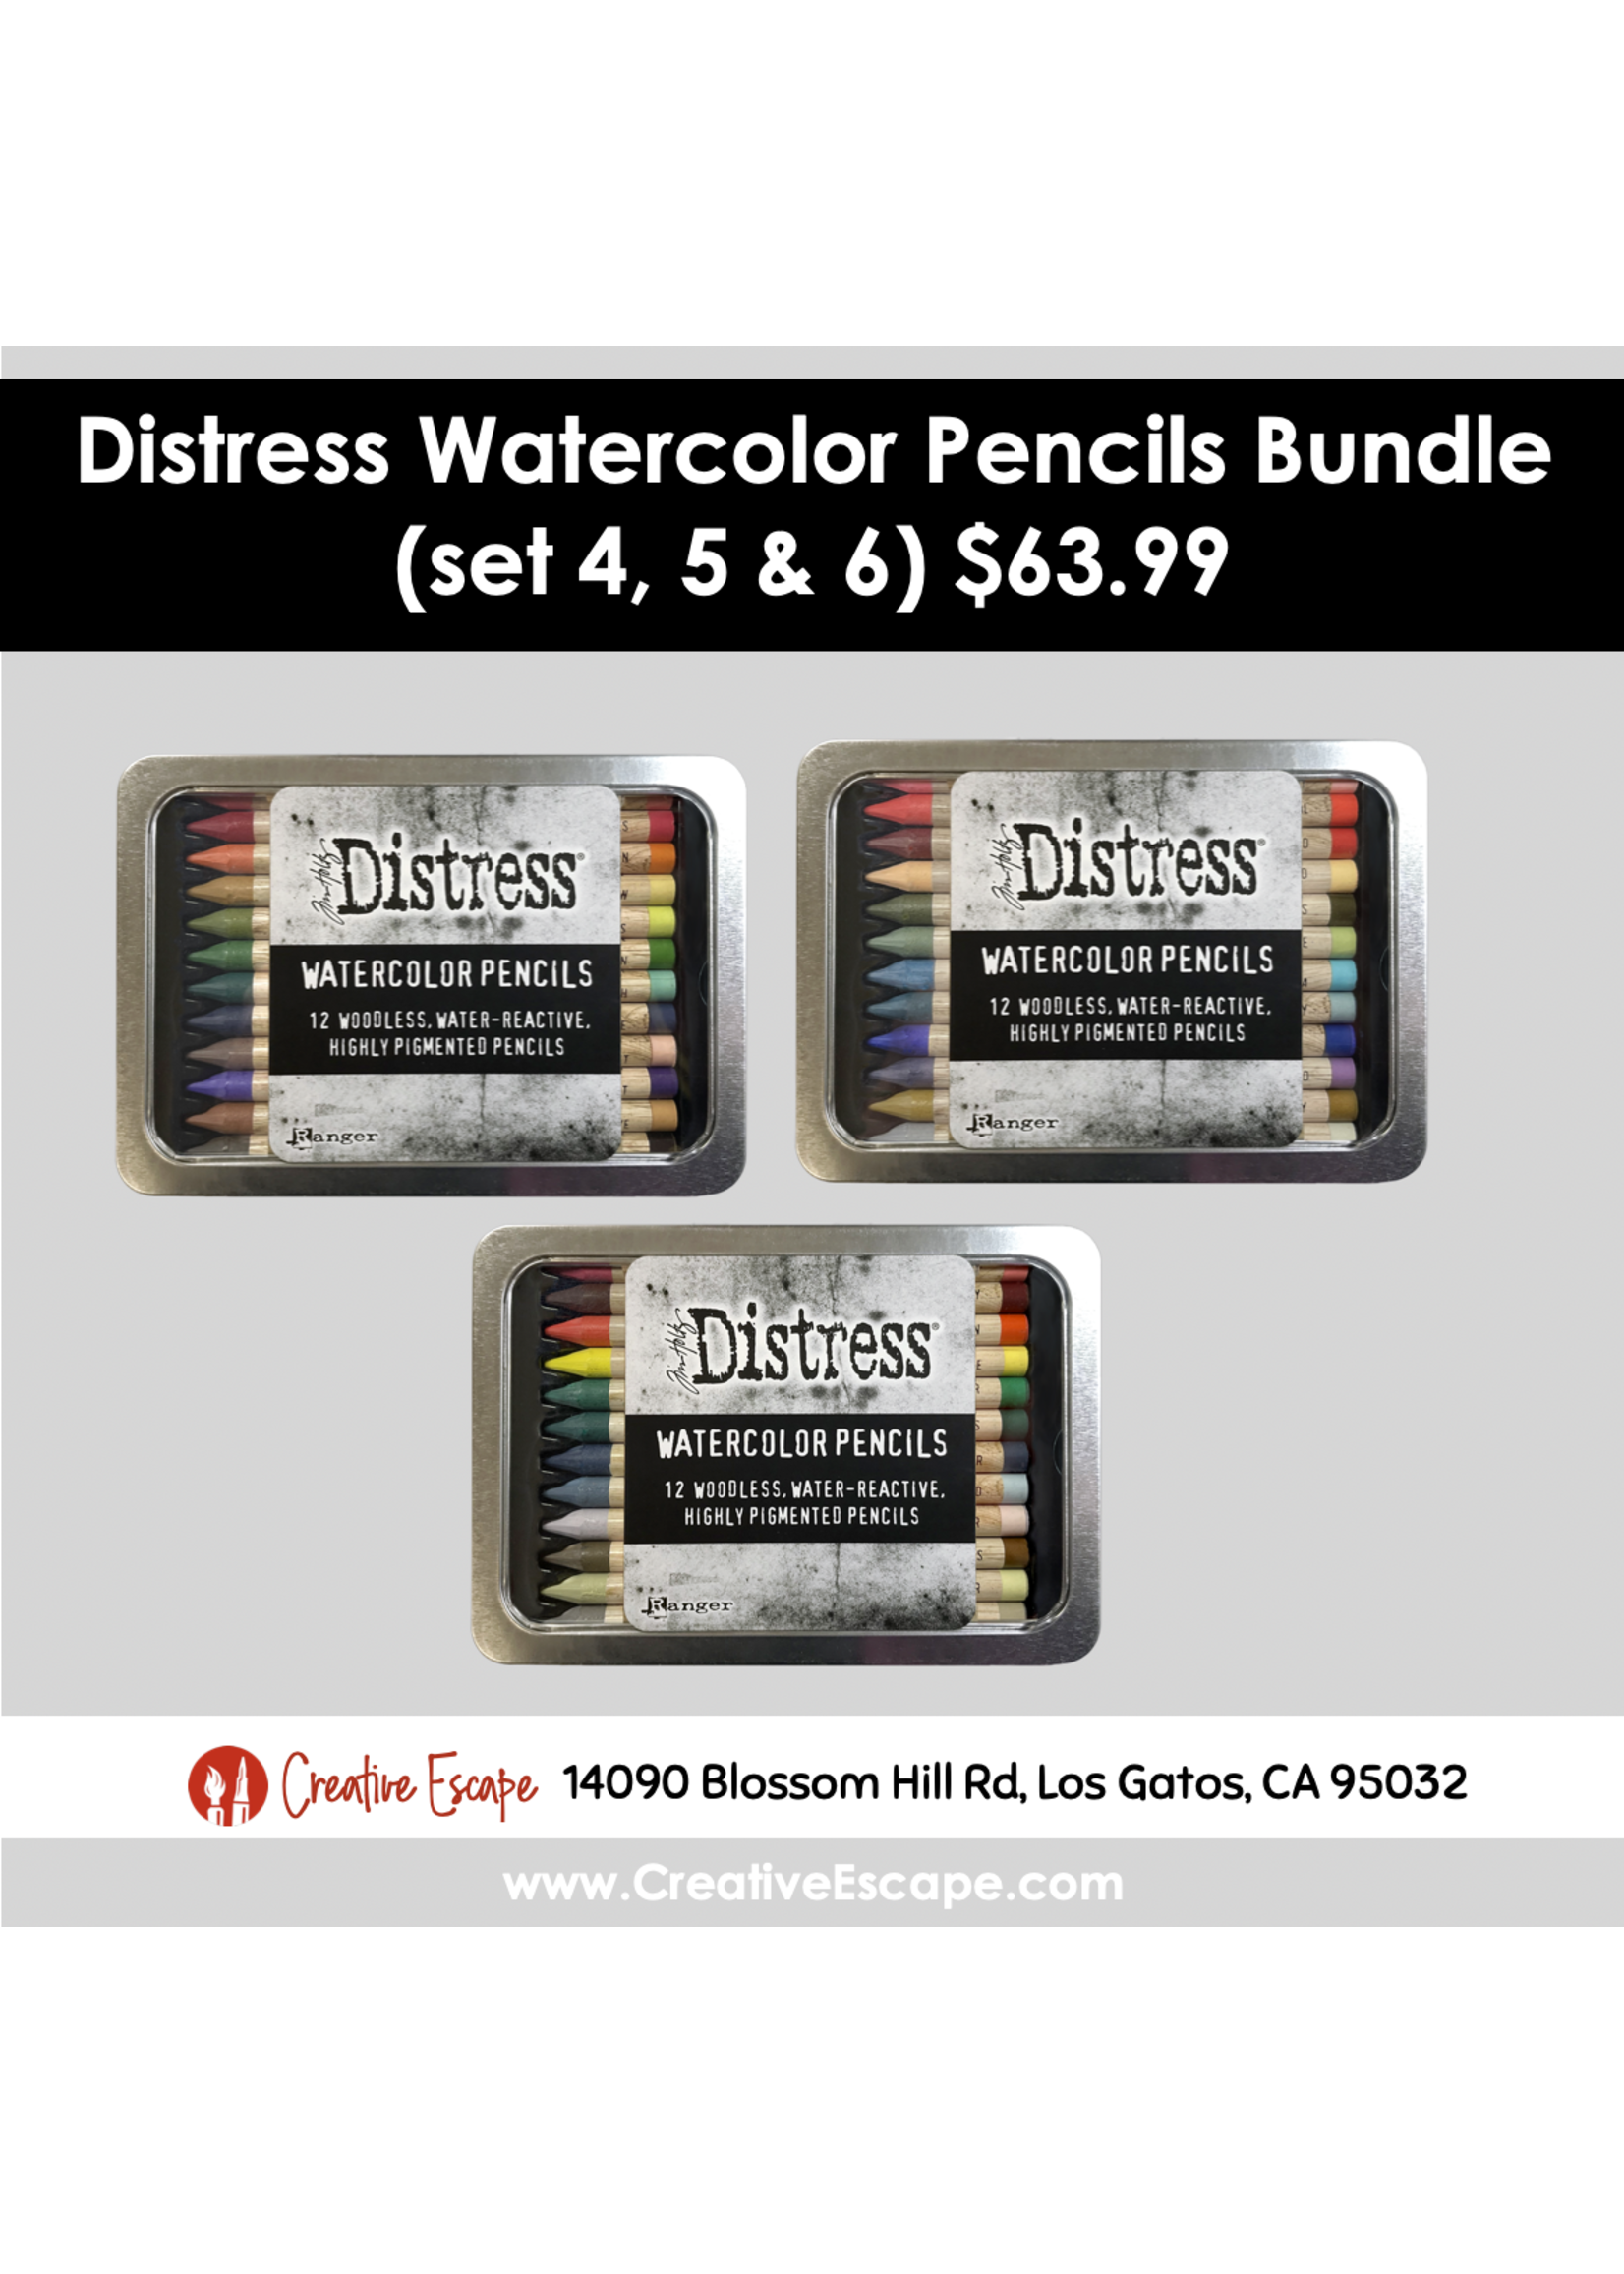 Tim Holtz Distress Watercolor Pencils Bundle (set 4, 5 & 6)